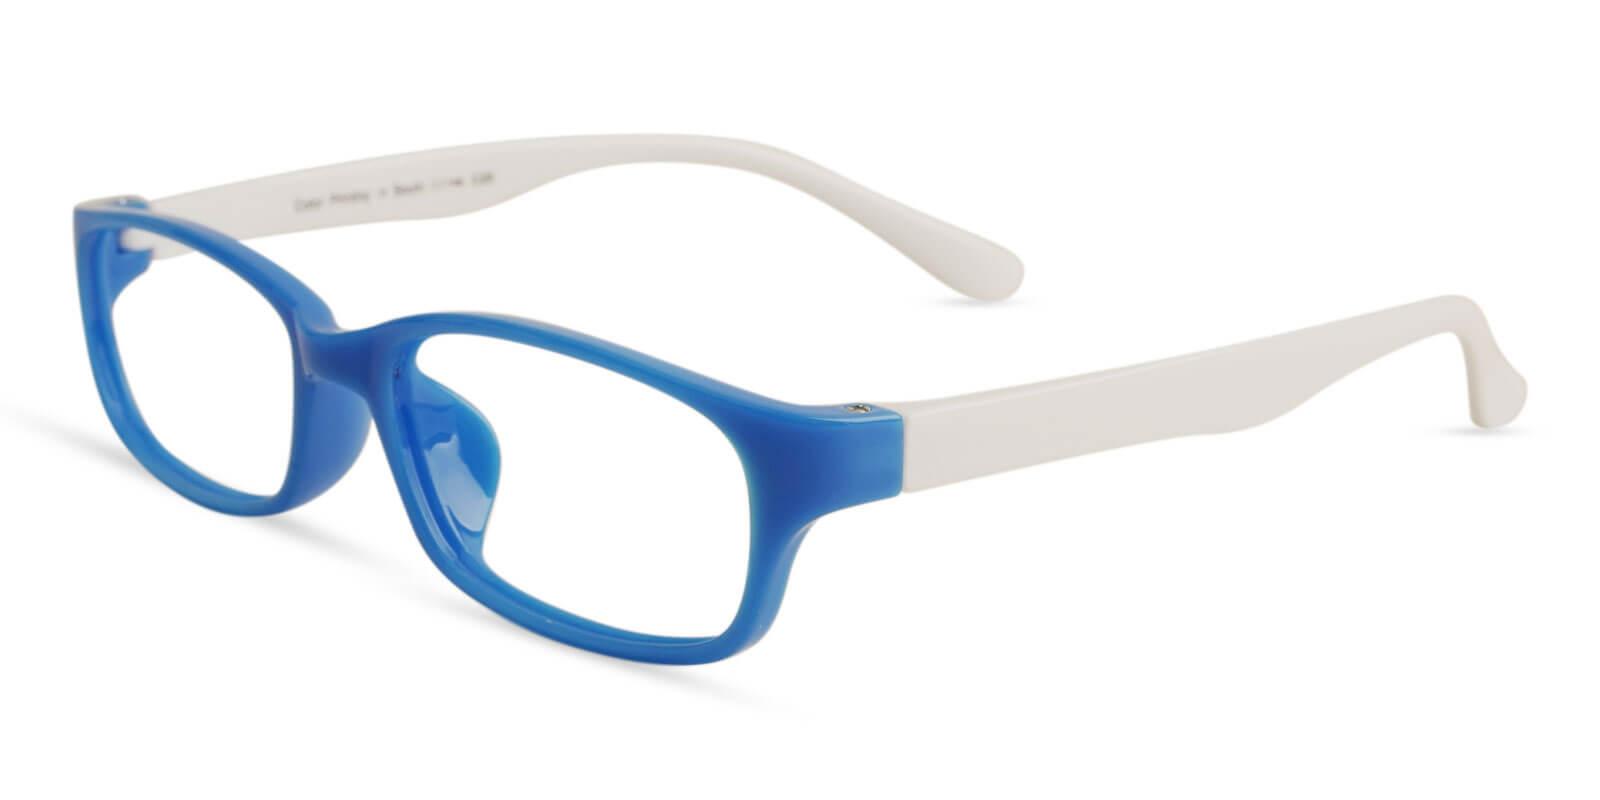 Kids-Phoebe Blue TR Eyeglasses , Lightweight , UniversalBridgeFit Frames from ABBE Glasses